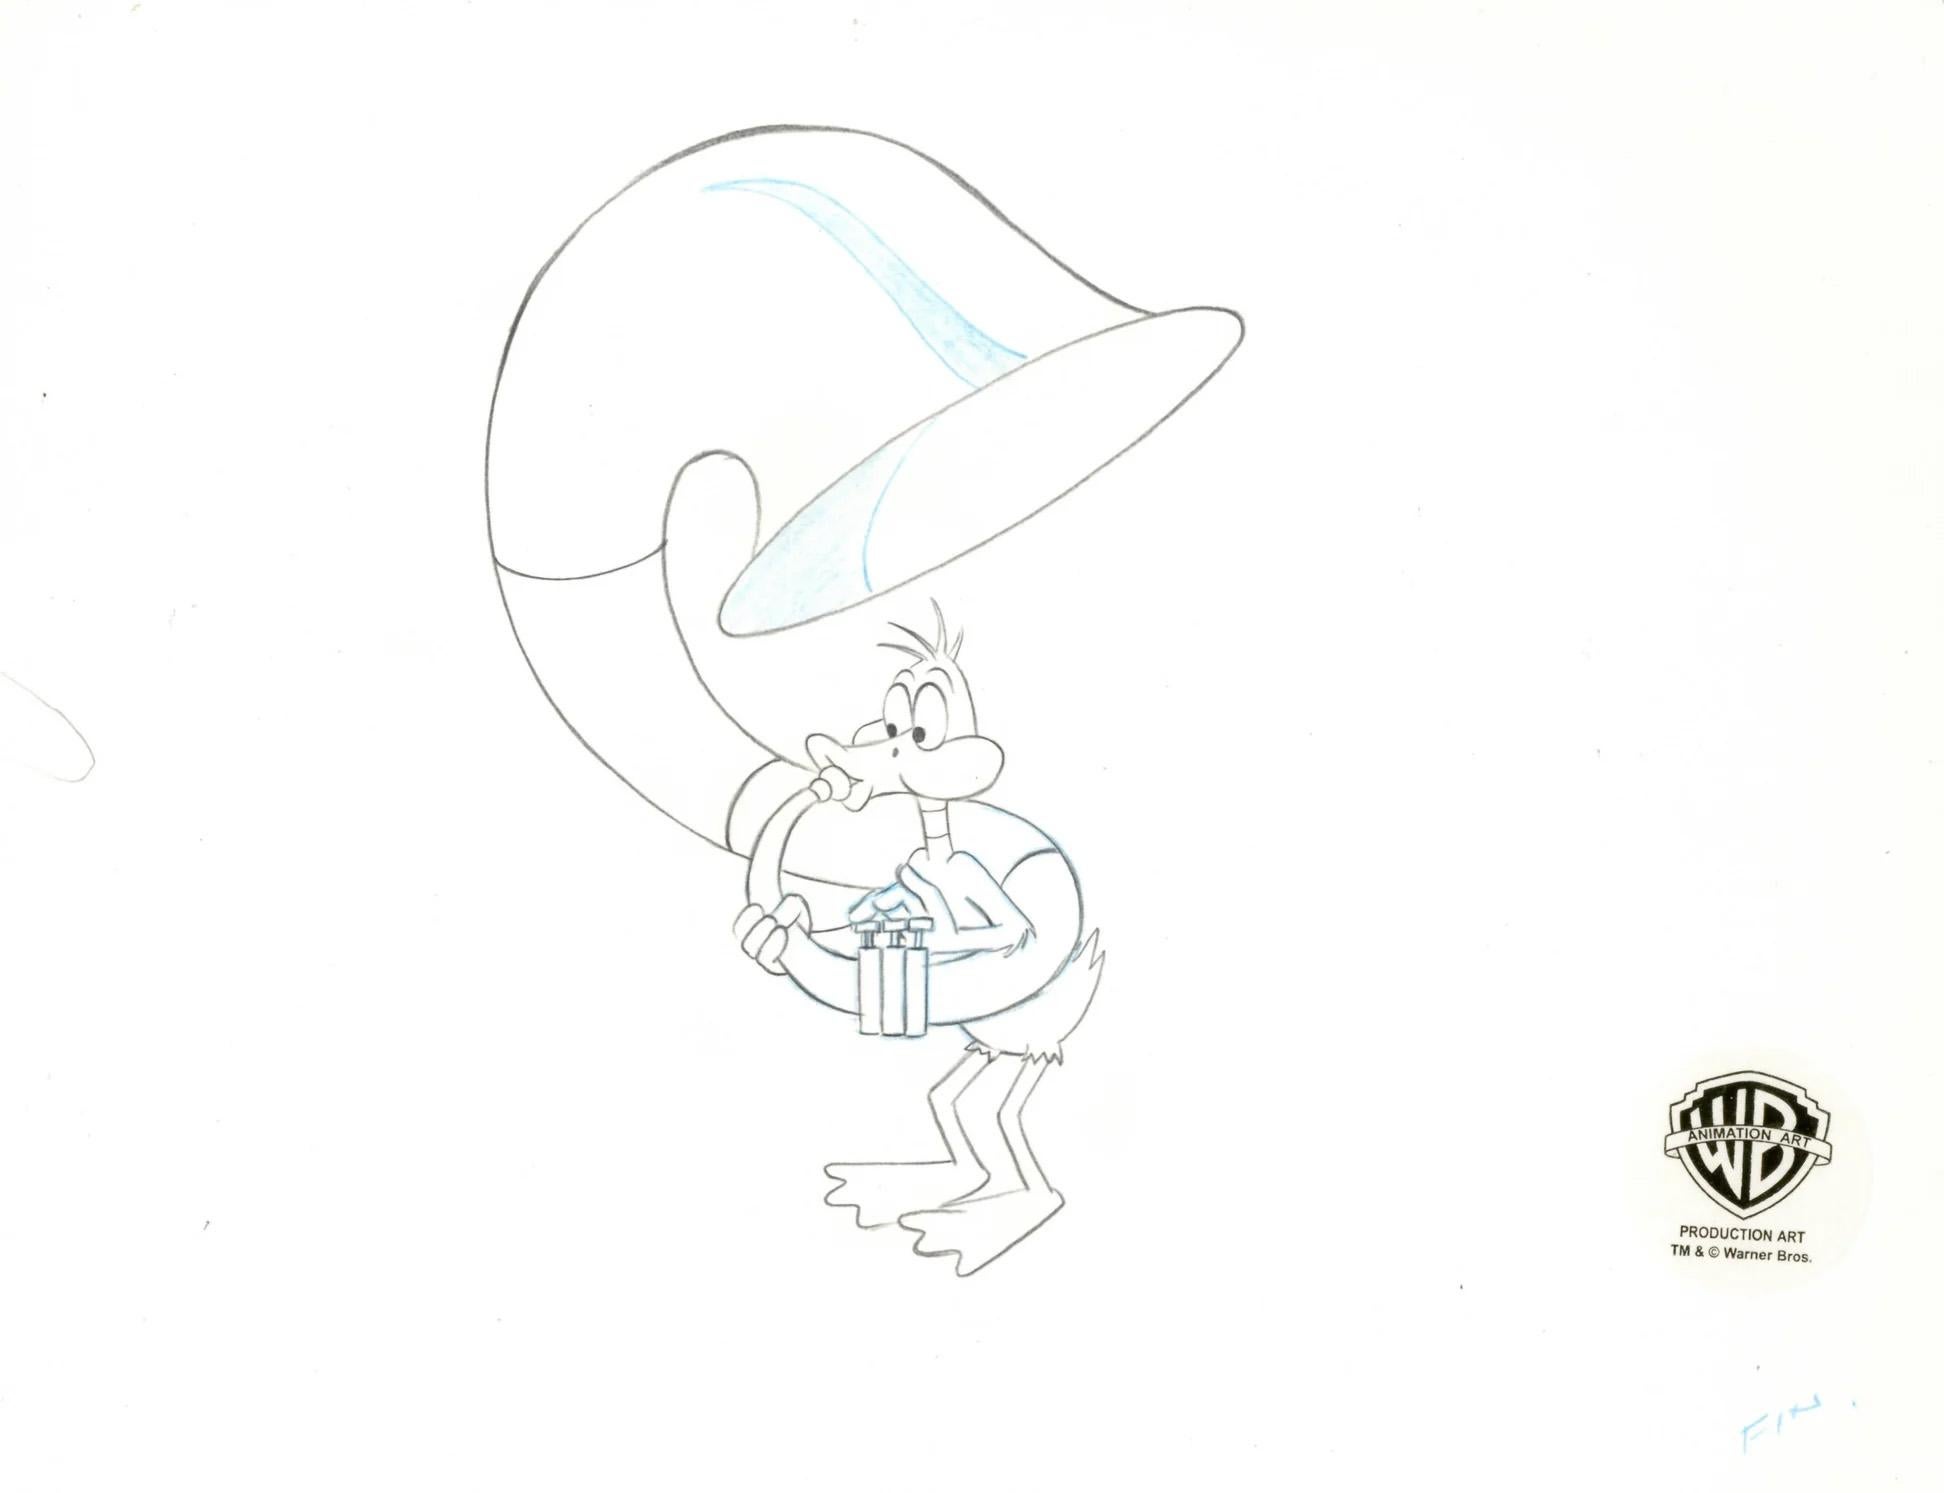 Dibujo original de producción de Looney Tunes: Pato Lucas - Art de Looney Tunes Studio Artists